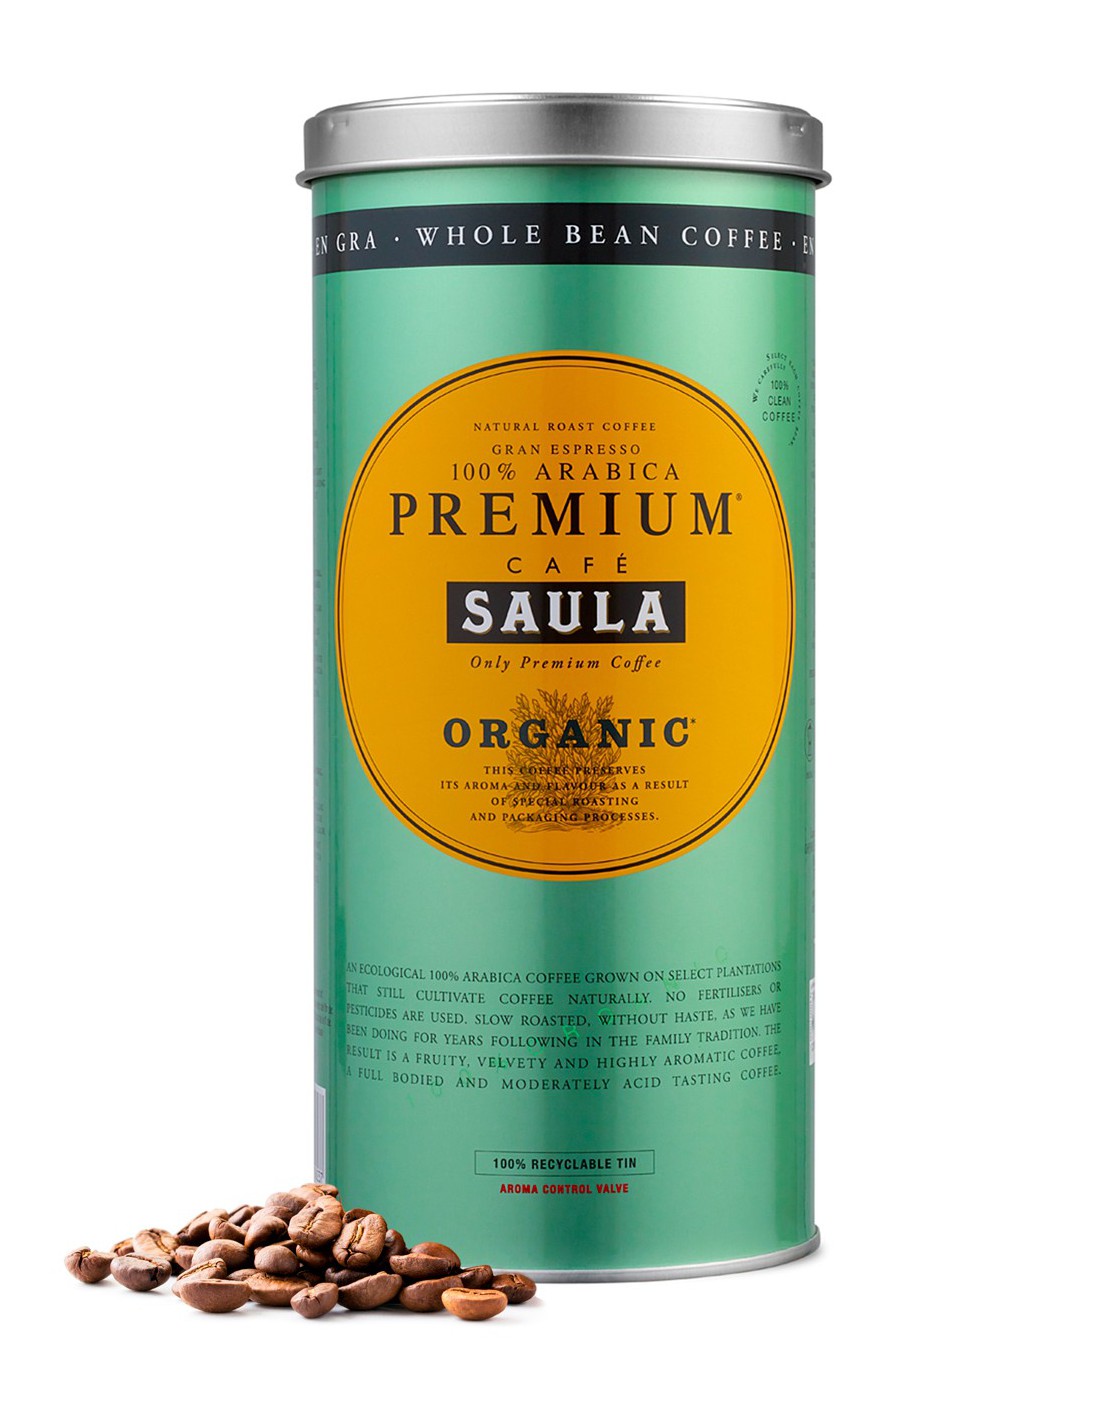 Gran Espresso Premium Ecológico Blend Grano 500g.